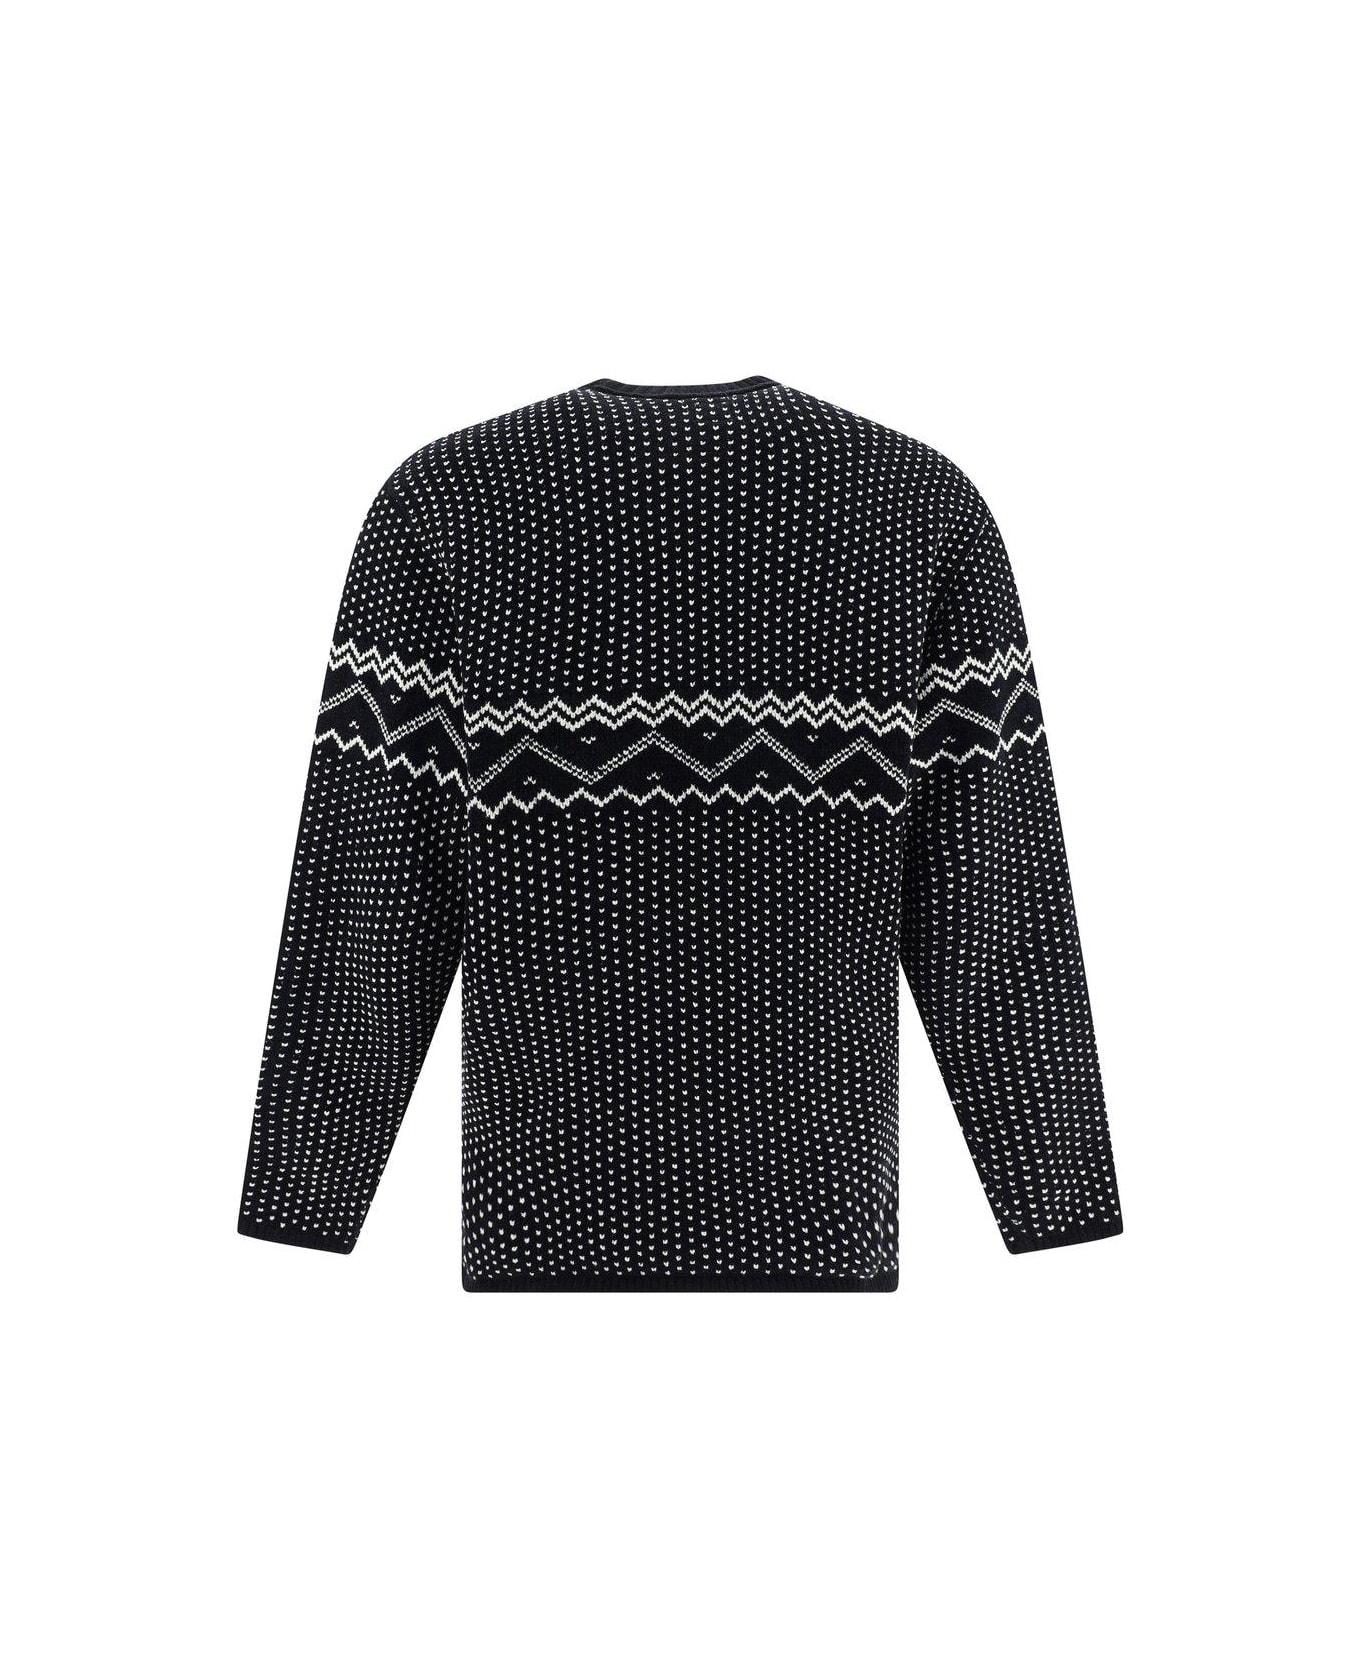 C.P. Company Chenille Jacquard Knitted Jumper - Black ニットウェア